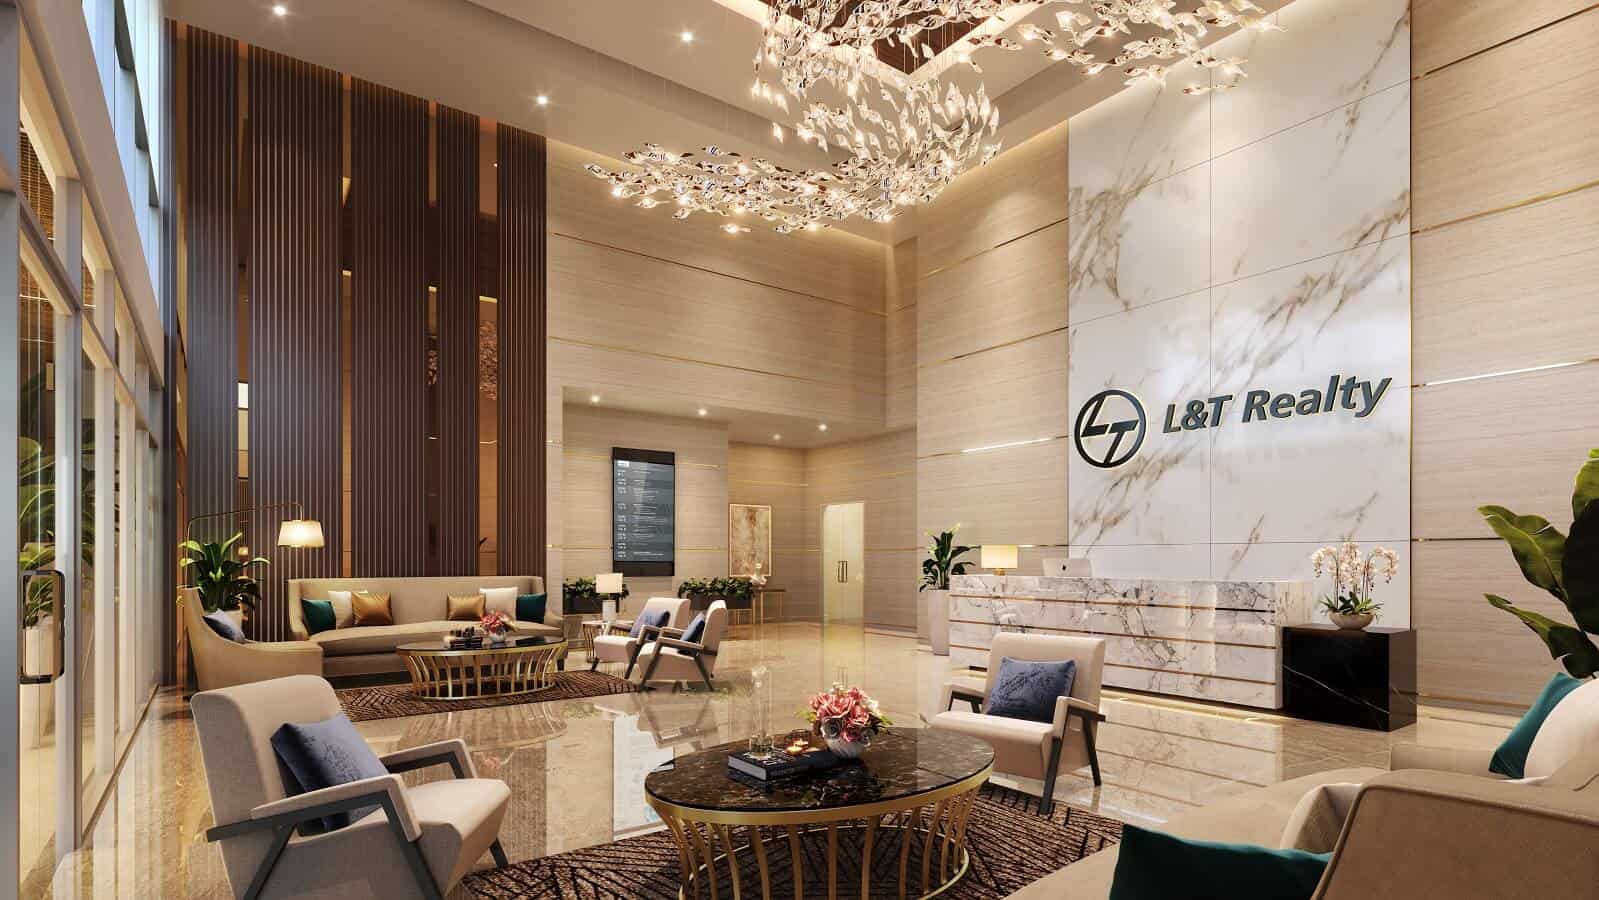 Luxury Flats In Powai - L&T Realty Elixir Reserve Entrance Lobby